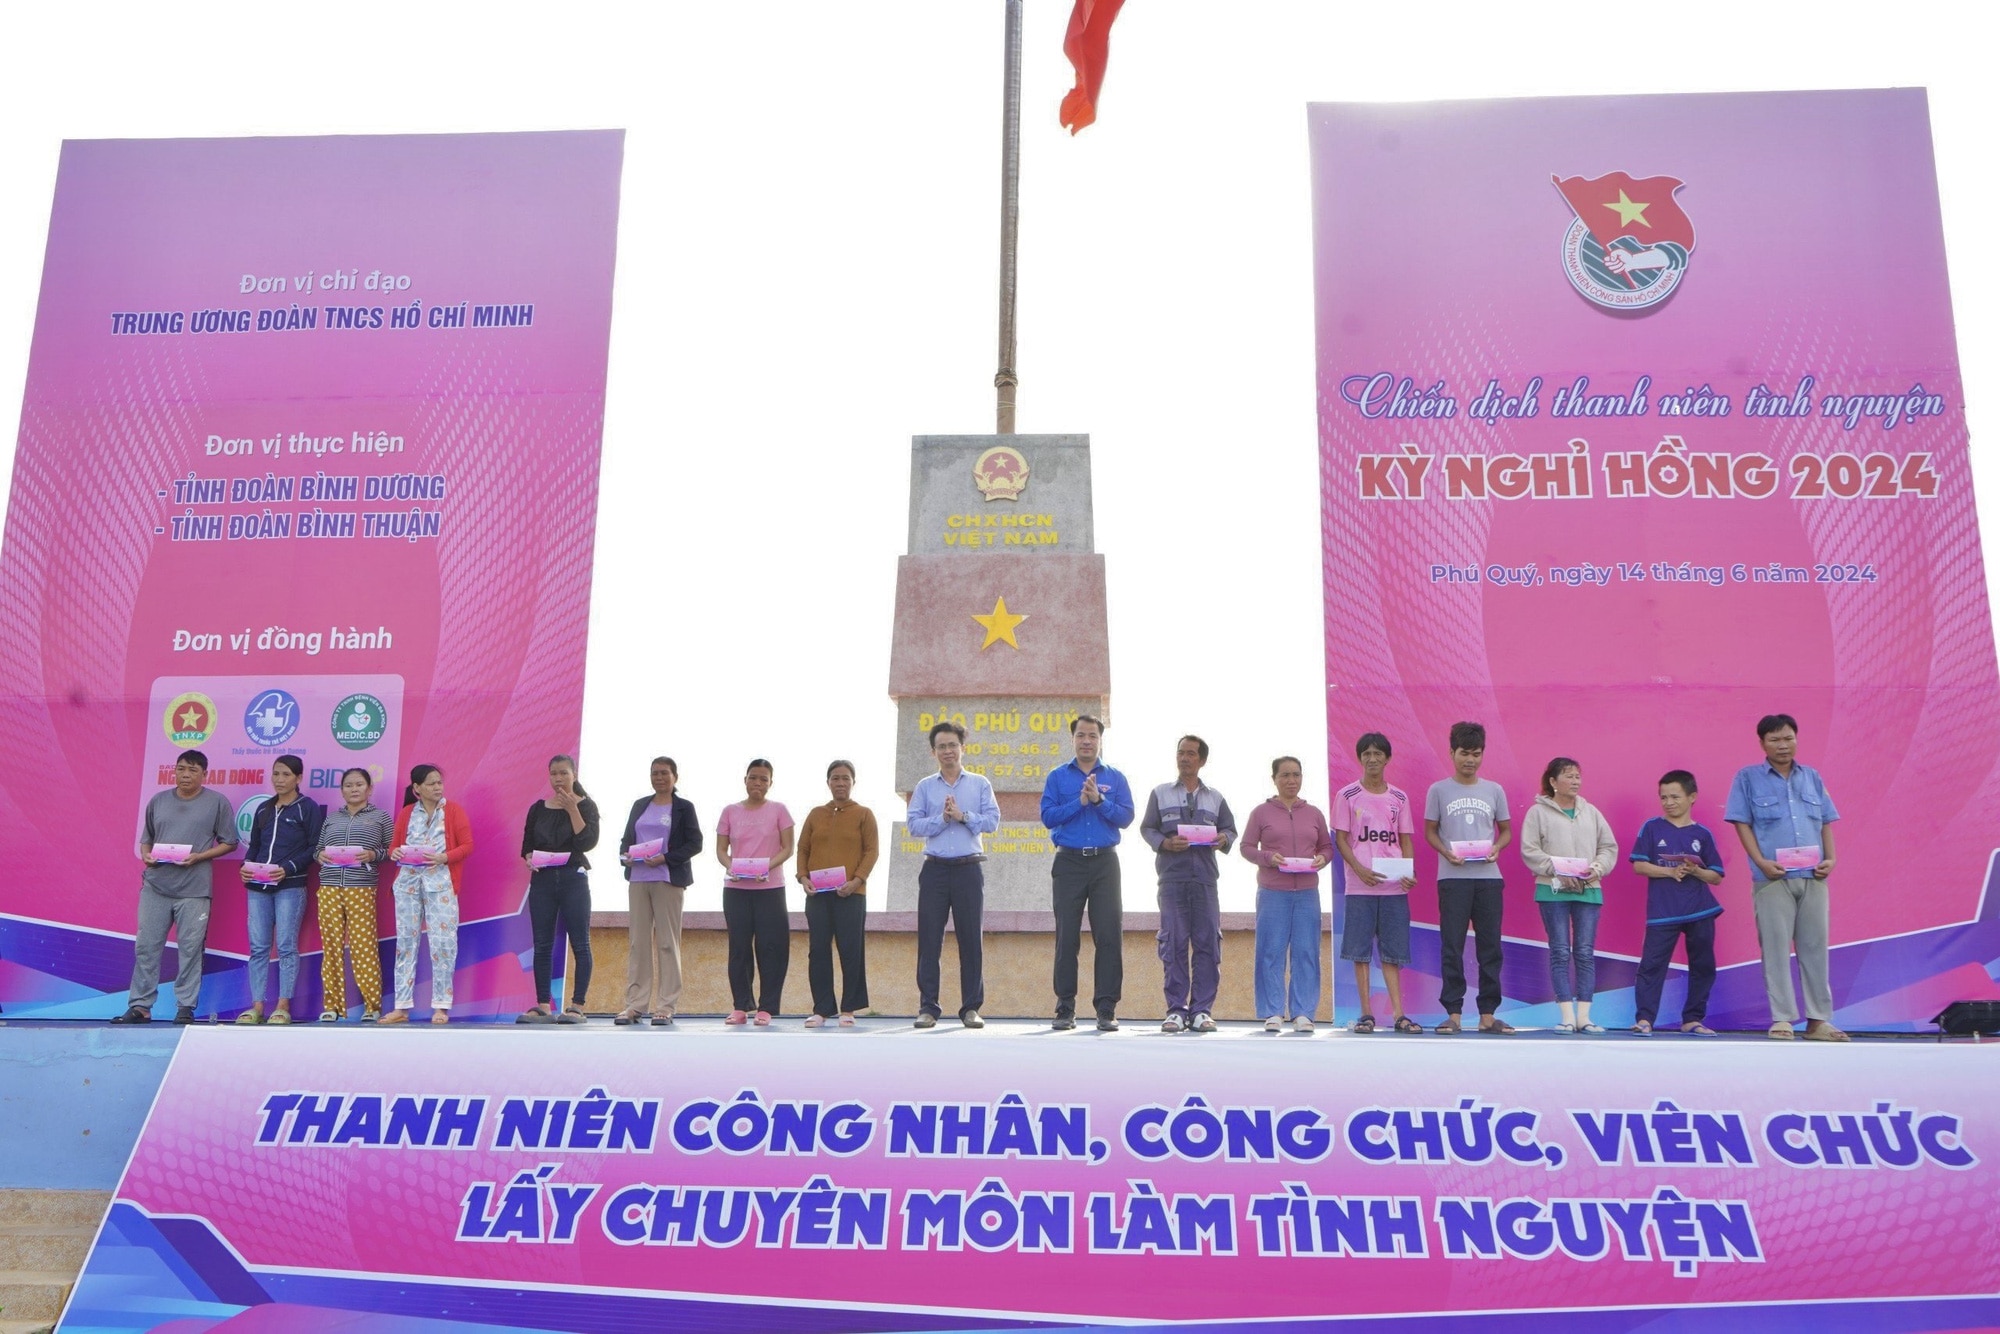 Hoạt động tặng quà cho người dân đảo Phú Quý trong chiến dịch Kỳ nghỉ hồng 2024 - Ảnh: Trung ương Đoàn